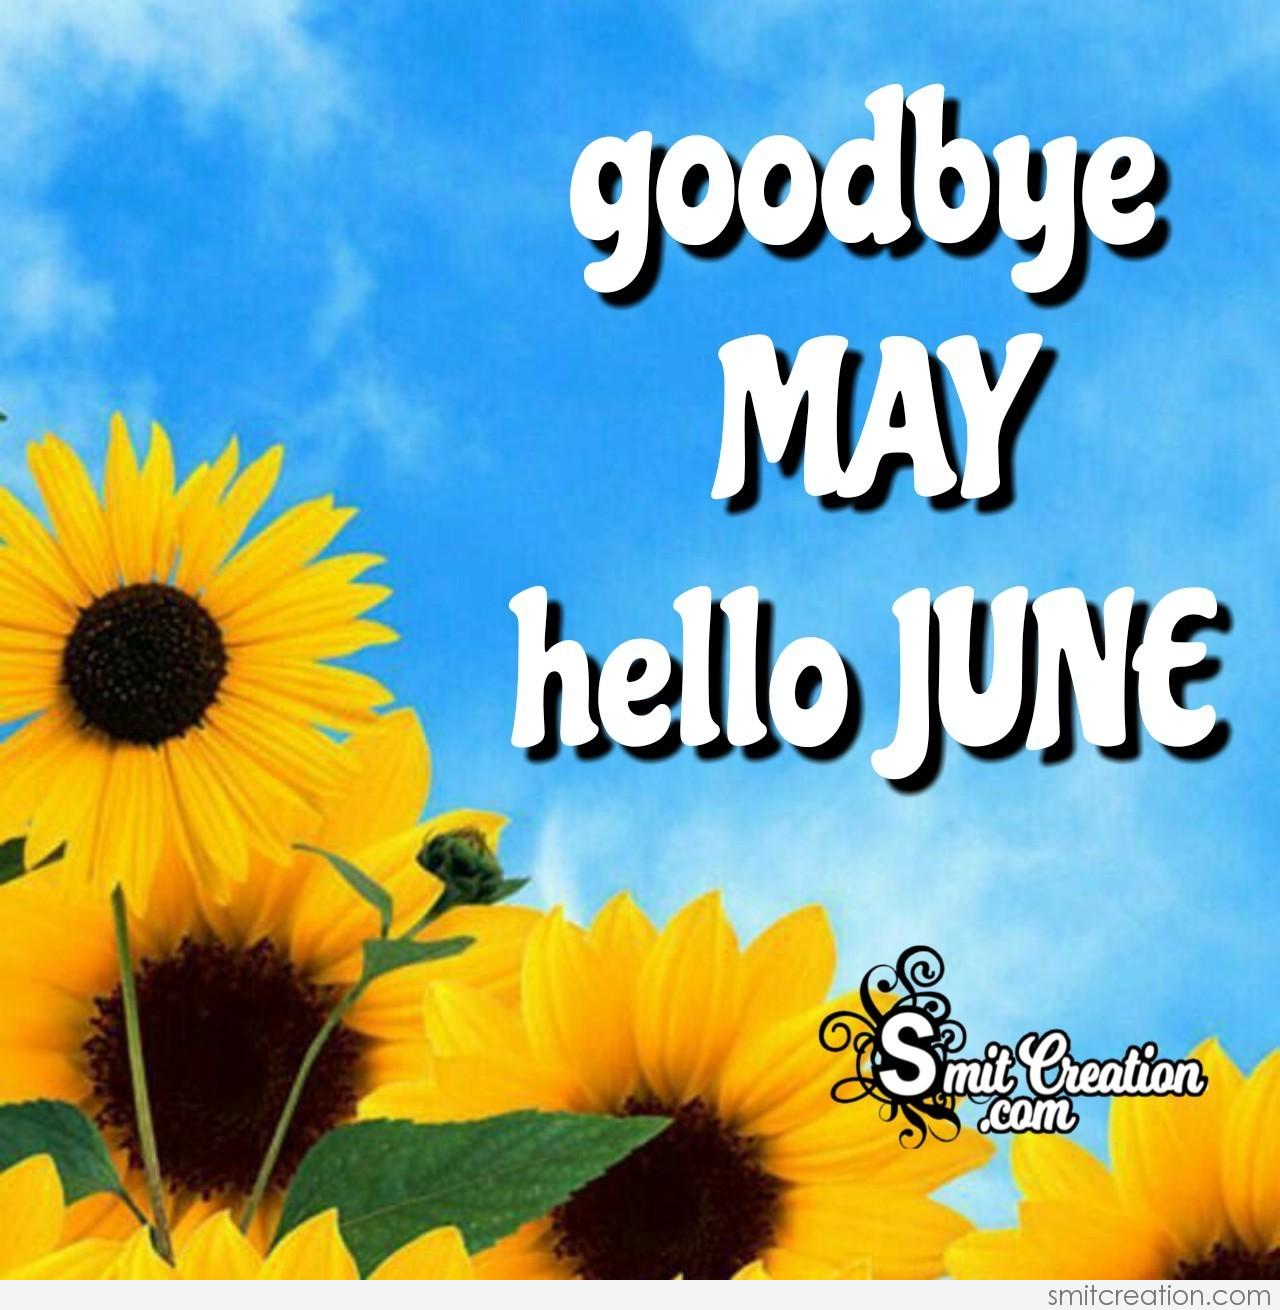 Goodbye May Hello June - SmitCreation.com